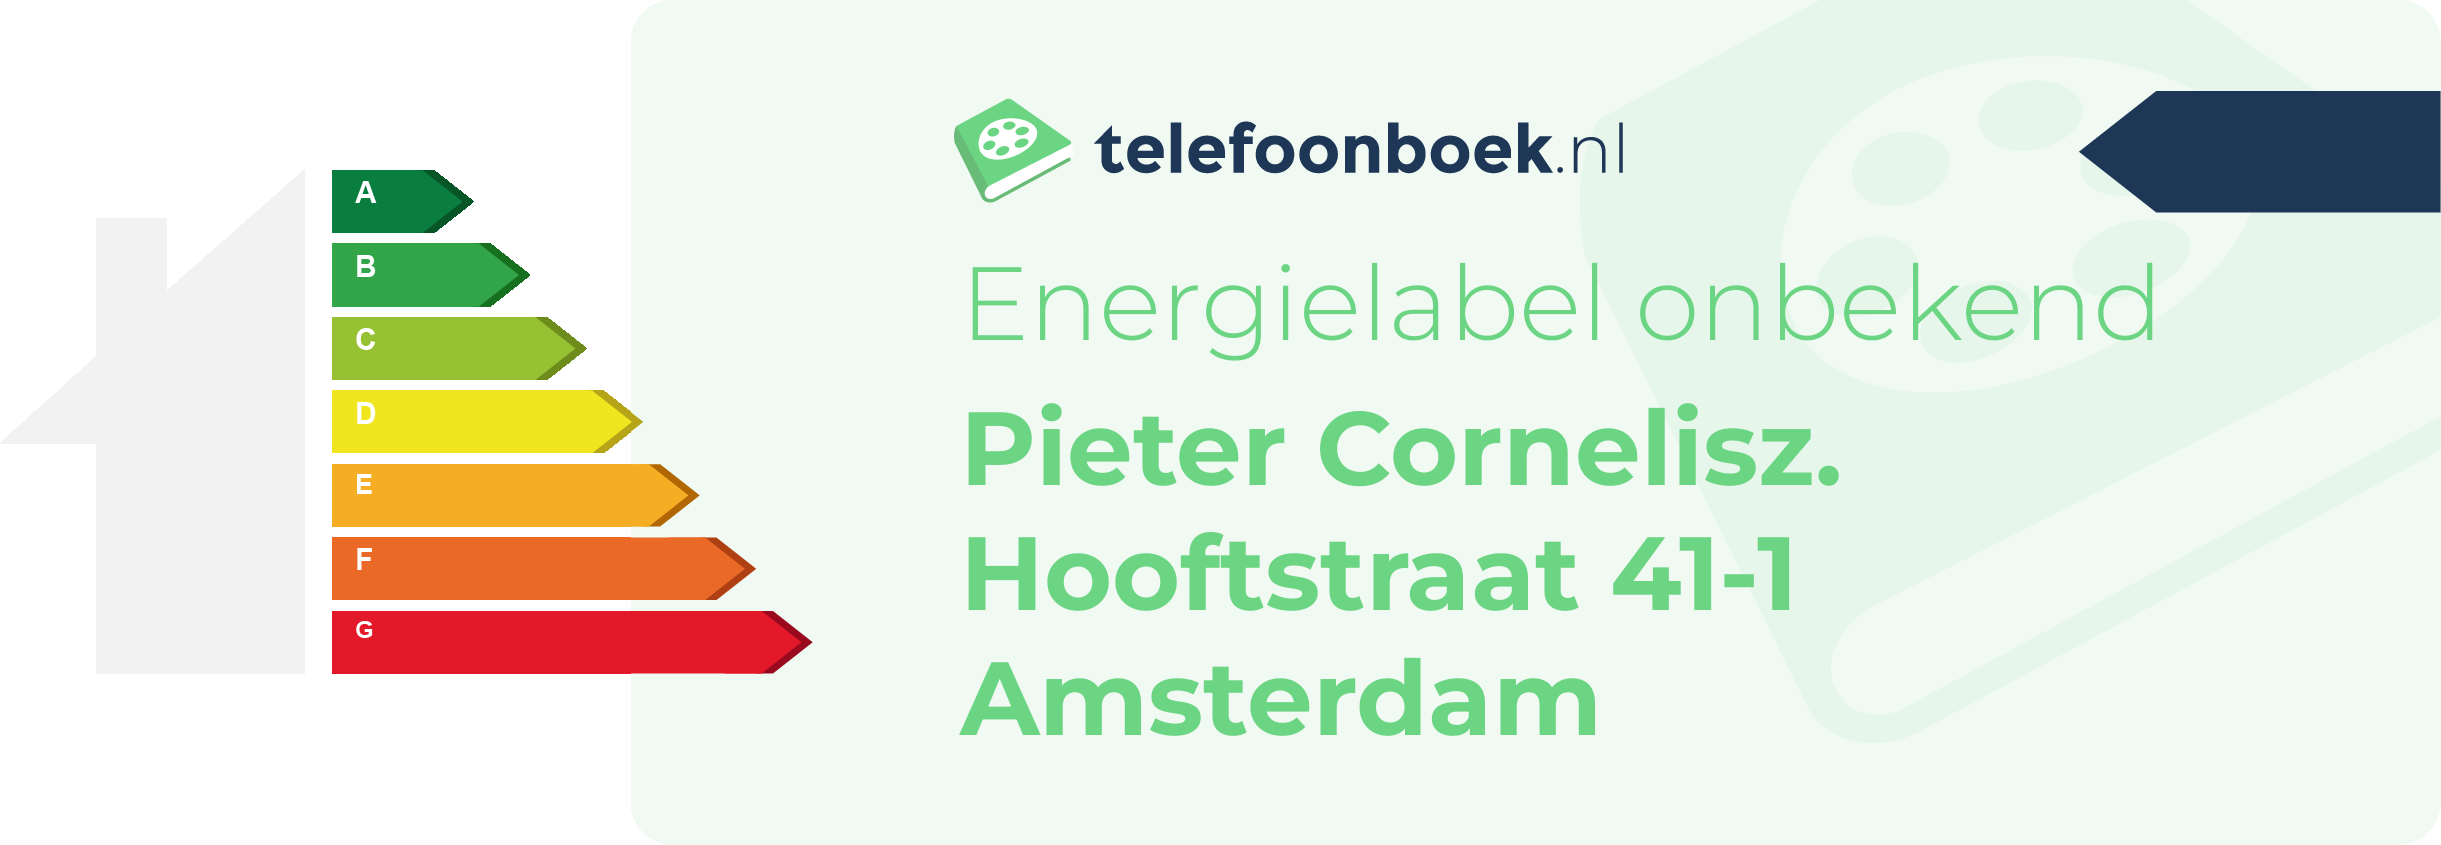 Energielabel Pieter Cornelisz. Hooftstraat 41-1 Amsterdam